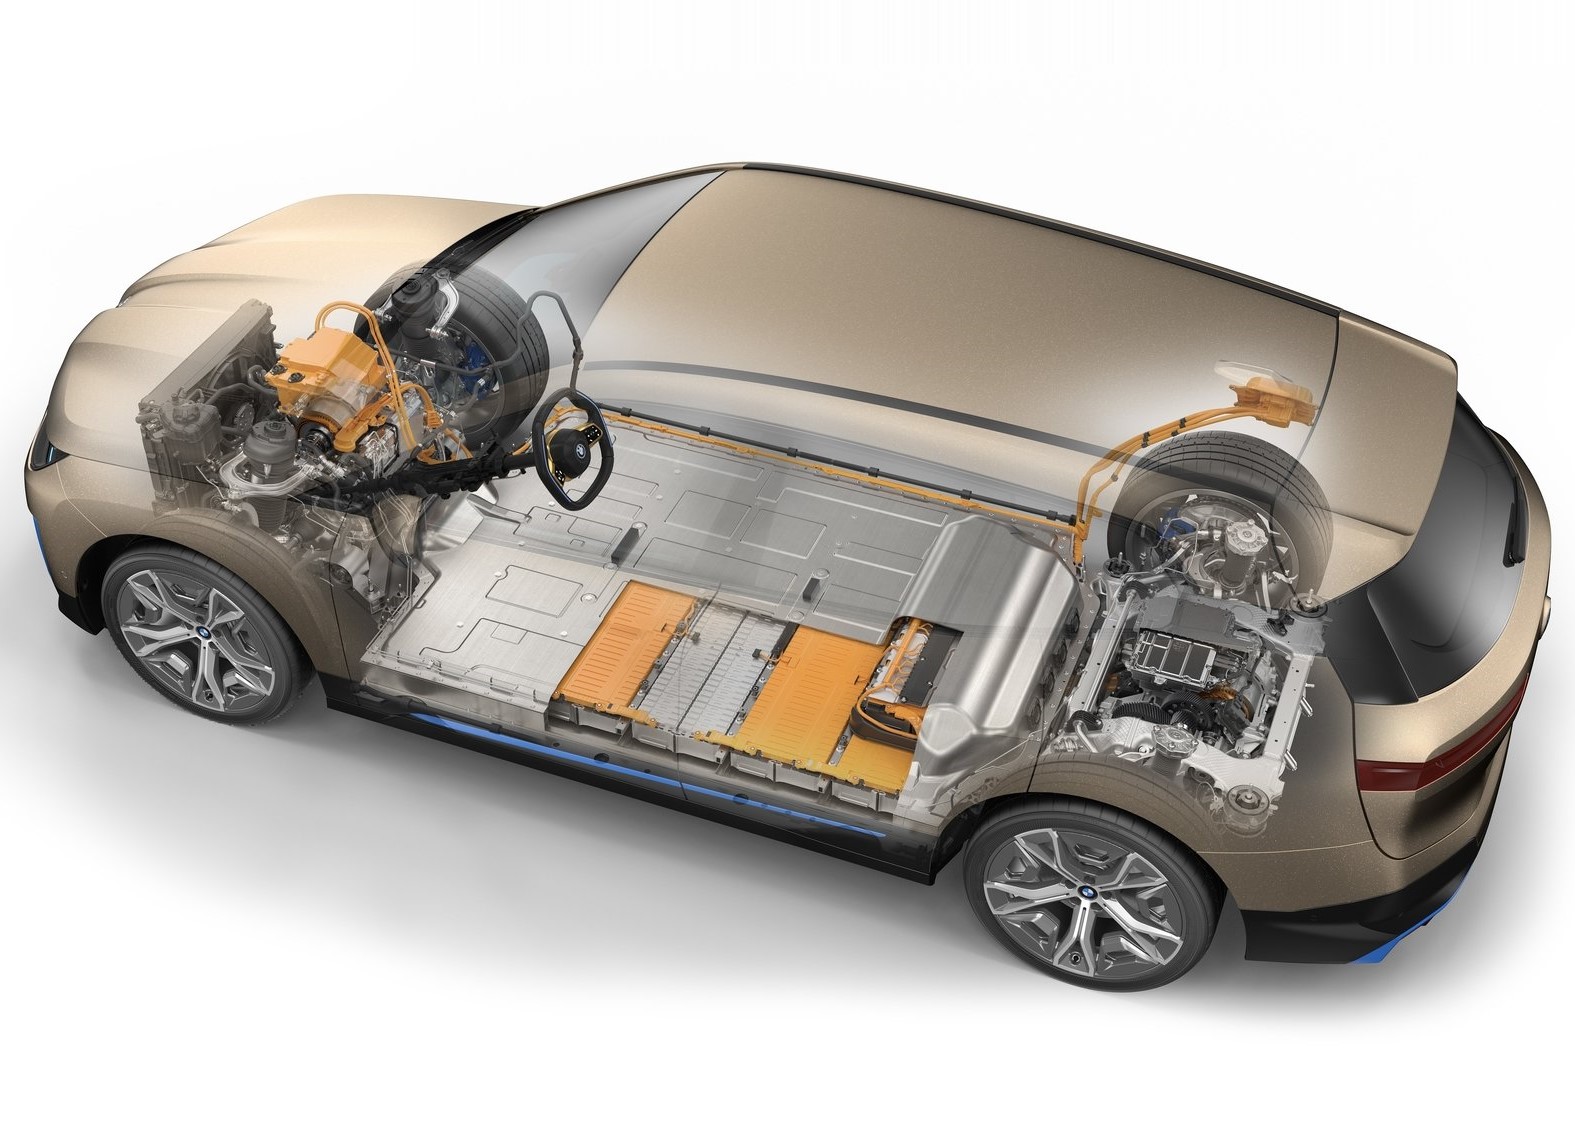 電動車的電池平整放置於底盤處，不僅可以降低車身重心、達成均衡的前後車身重量比，還有利SUV車室規劃。(圖片來源 / BMW)